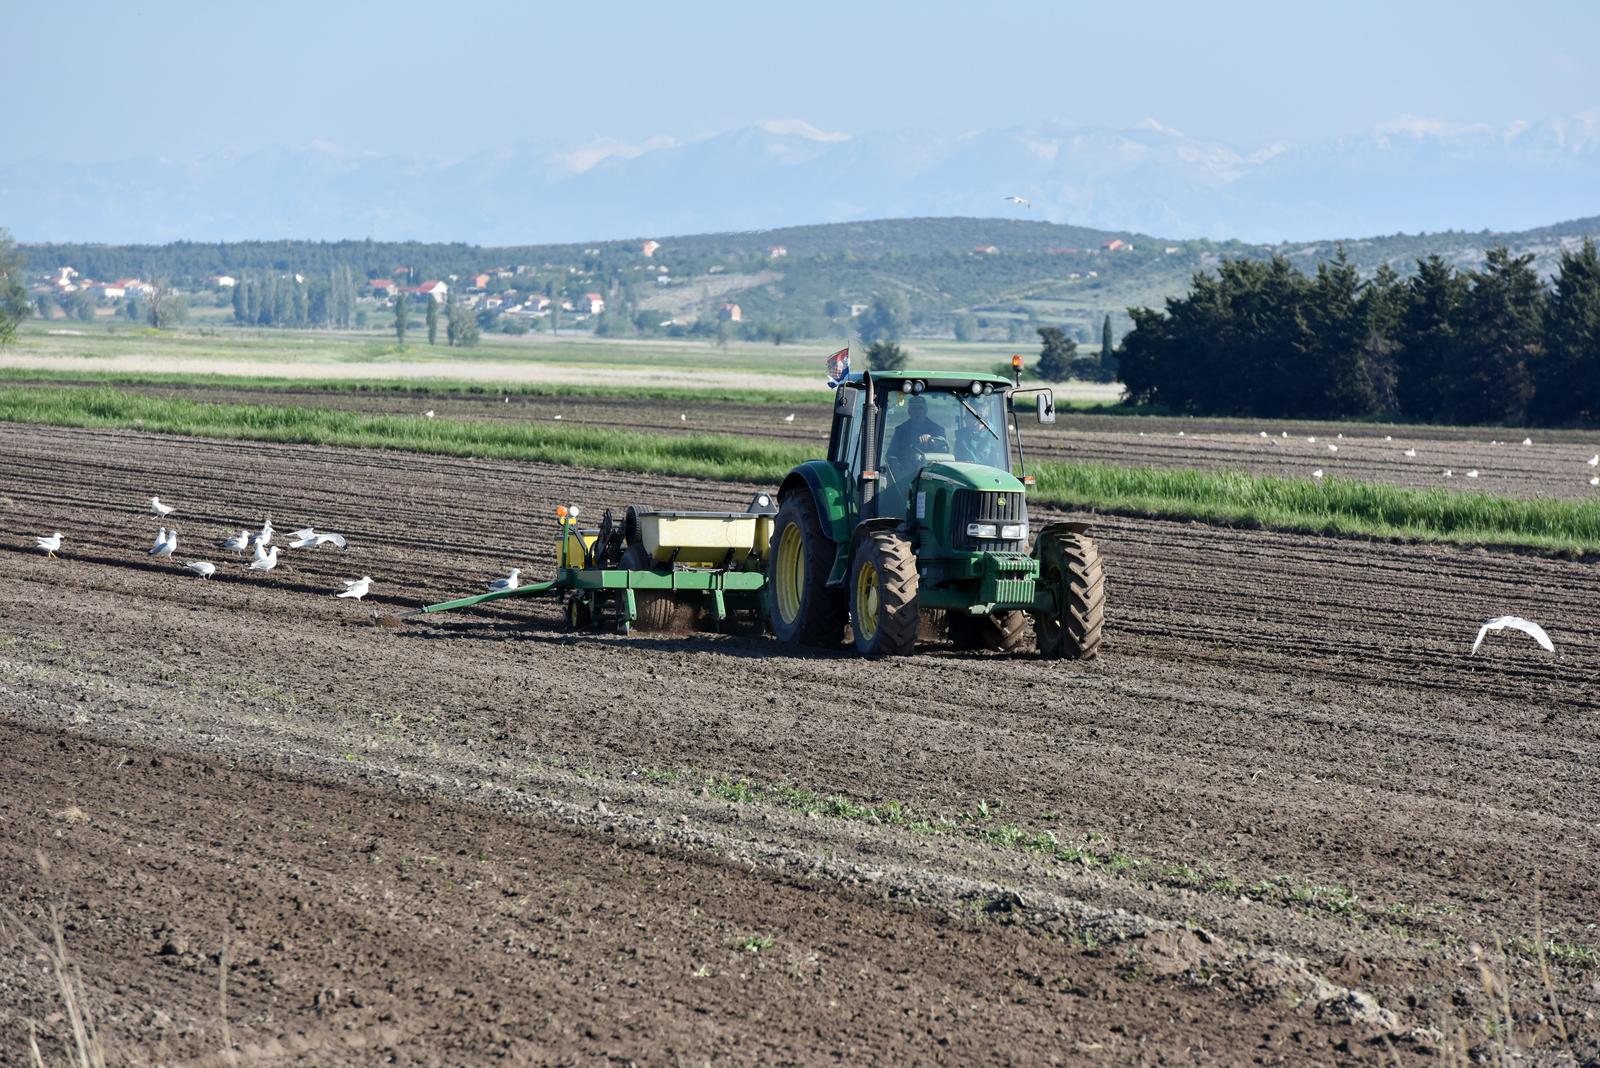 07.05.2019., Pakostane - Lijep proljetni dan poljoprivrednici iskoristili za obradu zemlje i sjetvu. Photo: Hrvoje Jelavic/PIXSELL